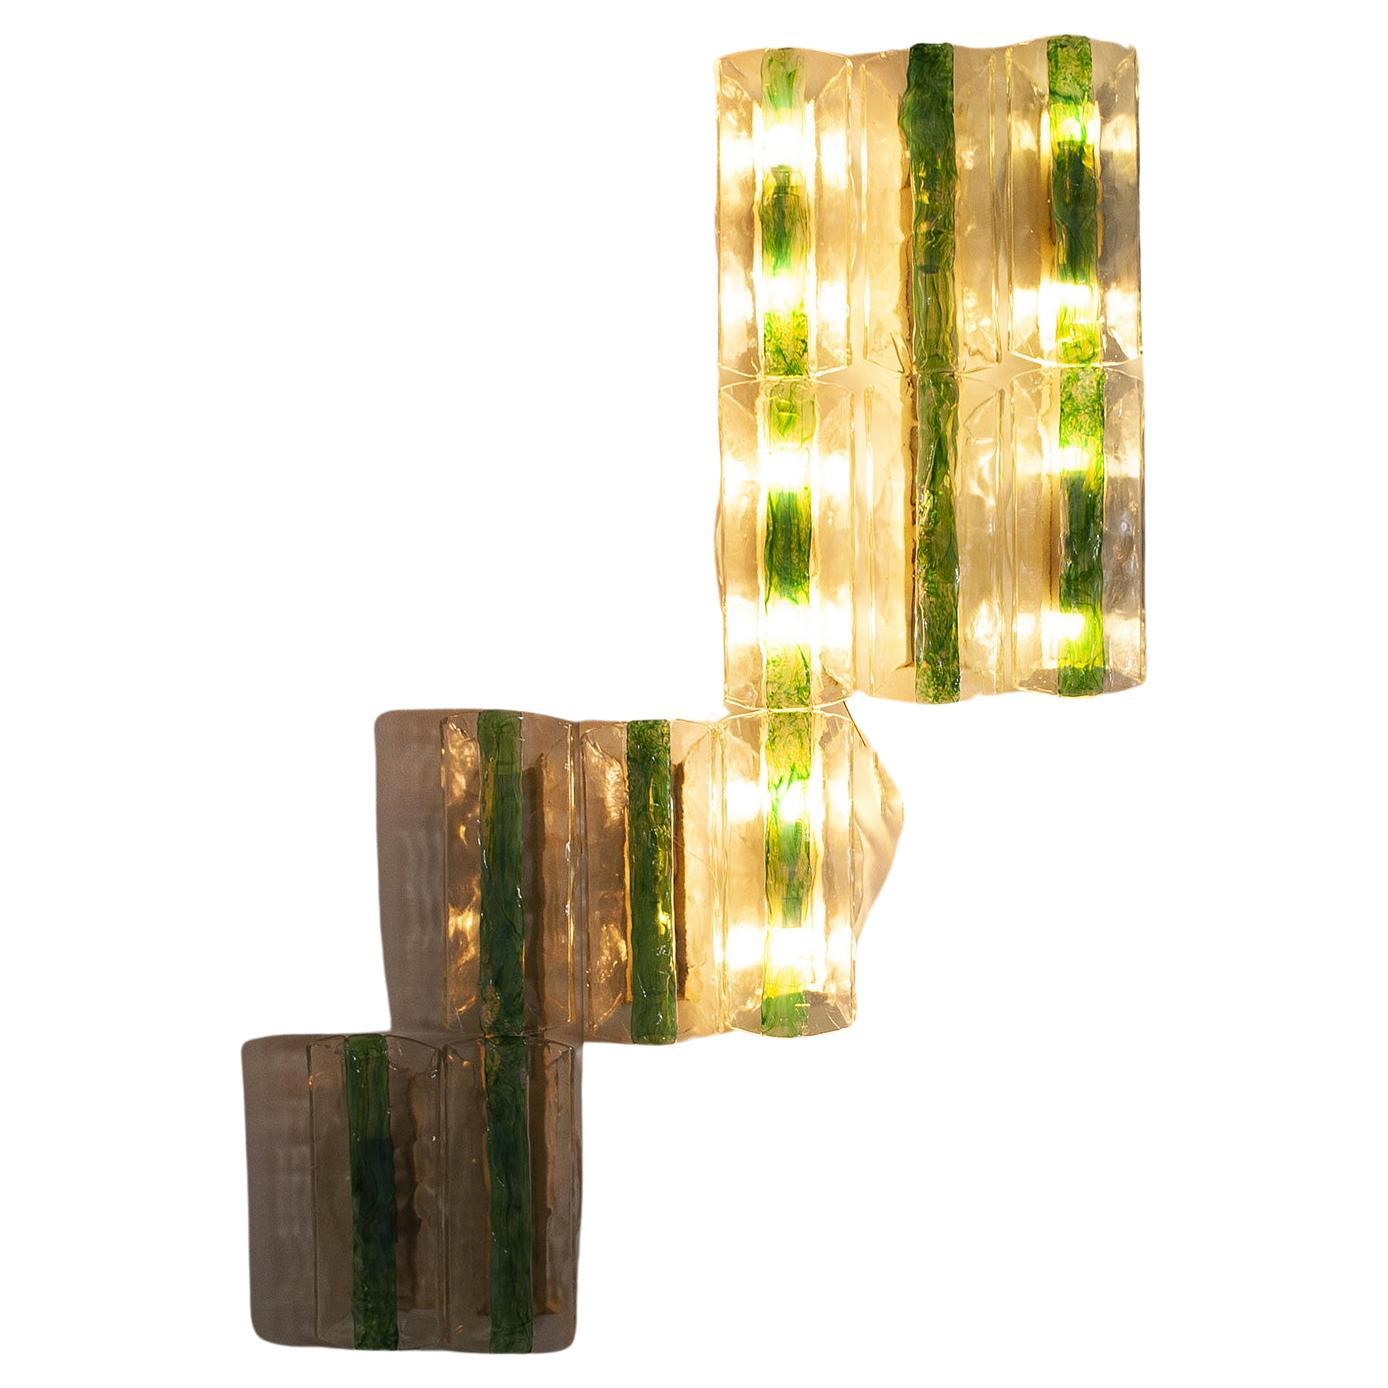 Set composé de 13 éléments du verrier vénitien A.V. Mazzega design Carlo Nason. Le verre texturé transparent est orné d'une bande de verre opalescent fusionné vert émeraude appliquée au centre de chaque applique, à l'exception de deux d'entre elles